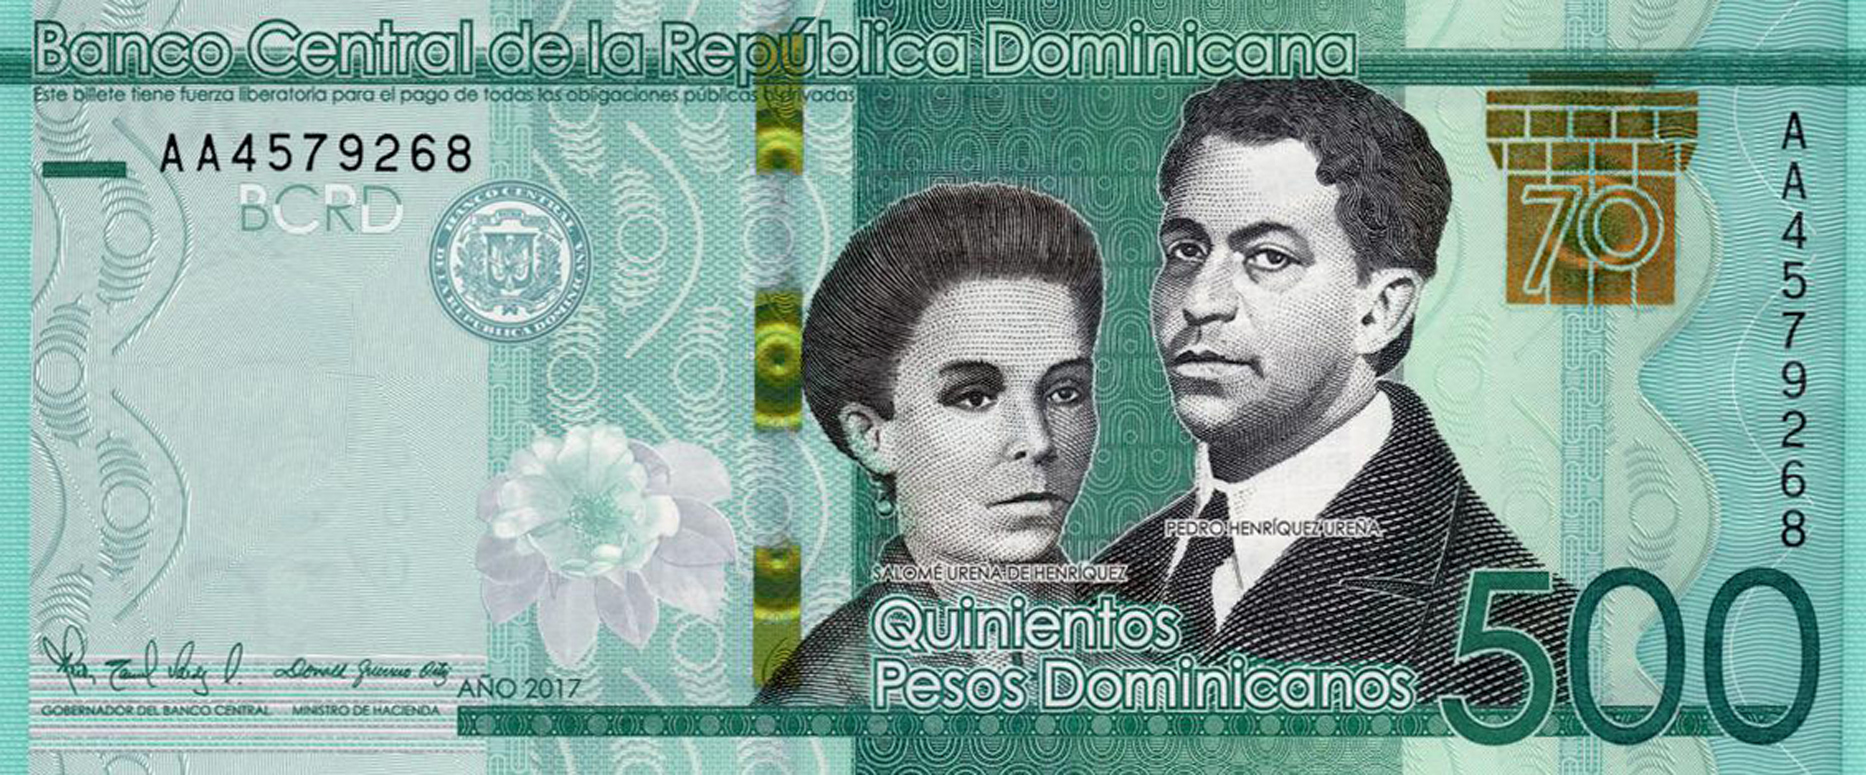 Dominican Republic new 500-peso dominicano commemorative note (B726a)  confirmed – BanknoteNews